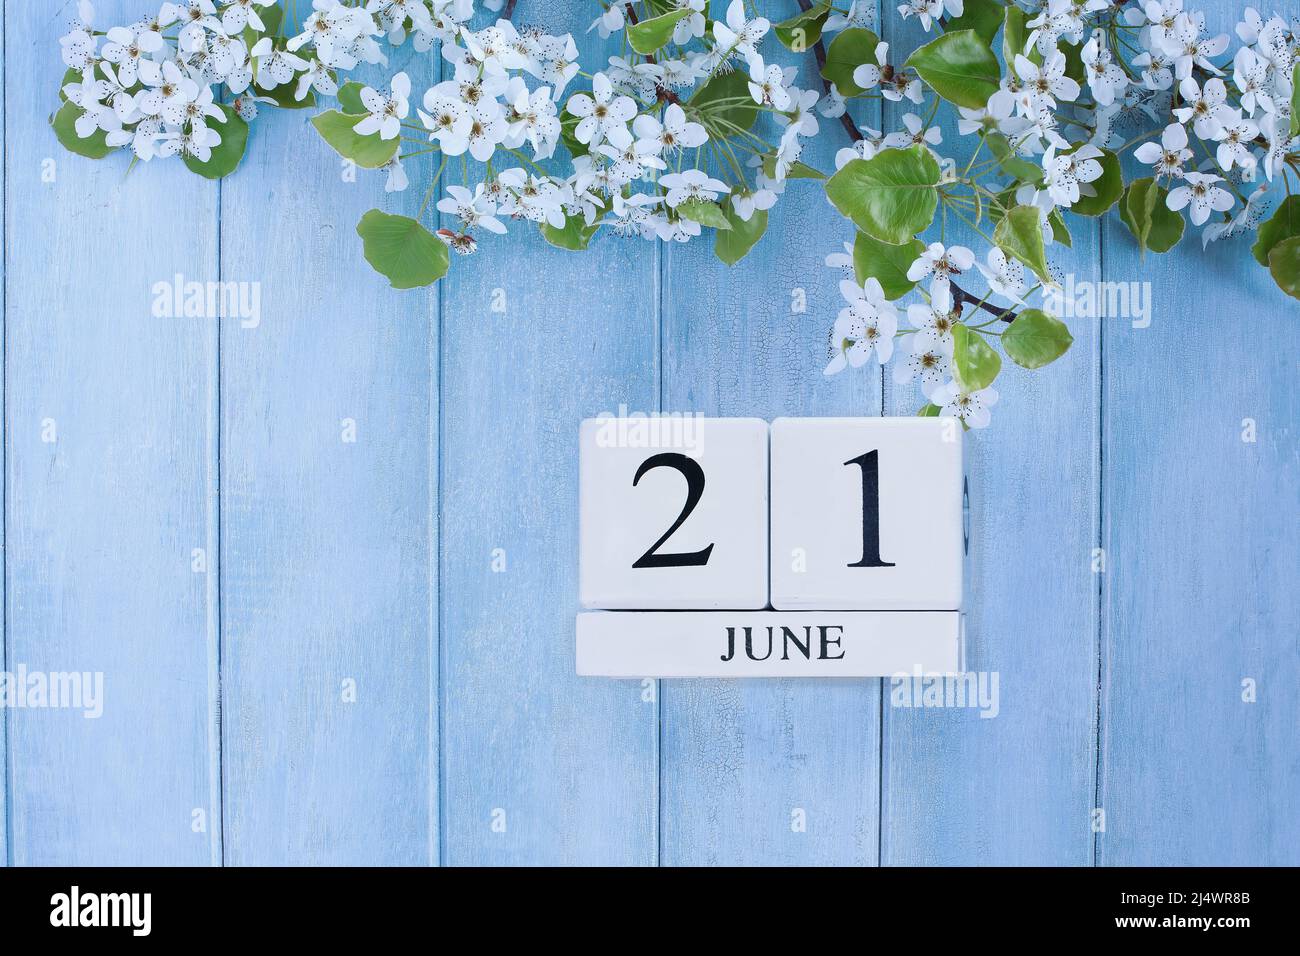 Solstice d'été. De beaux arbres blancs fleurissent sur un fond de bois rustique bleu paisible. Blocs de calendrier de juin 21st. Image prise par le haut. Banque D'Images